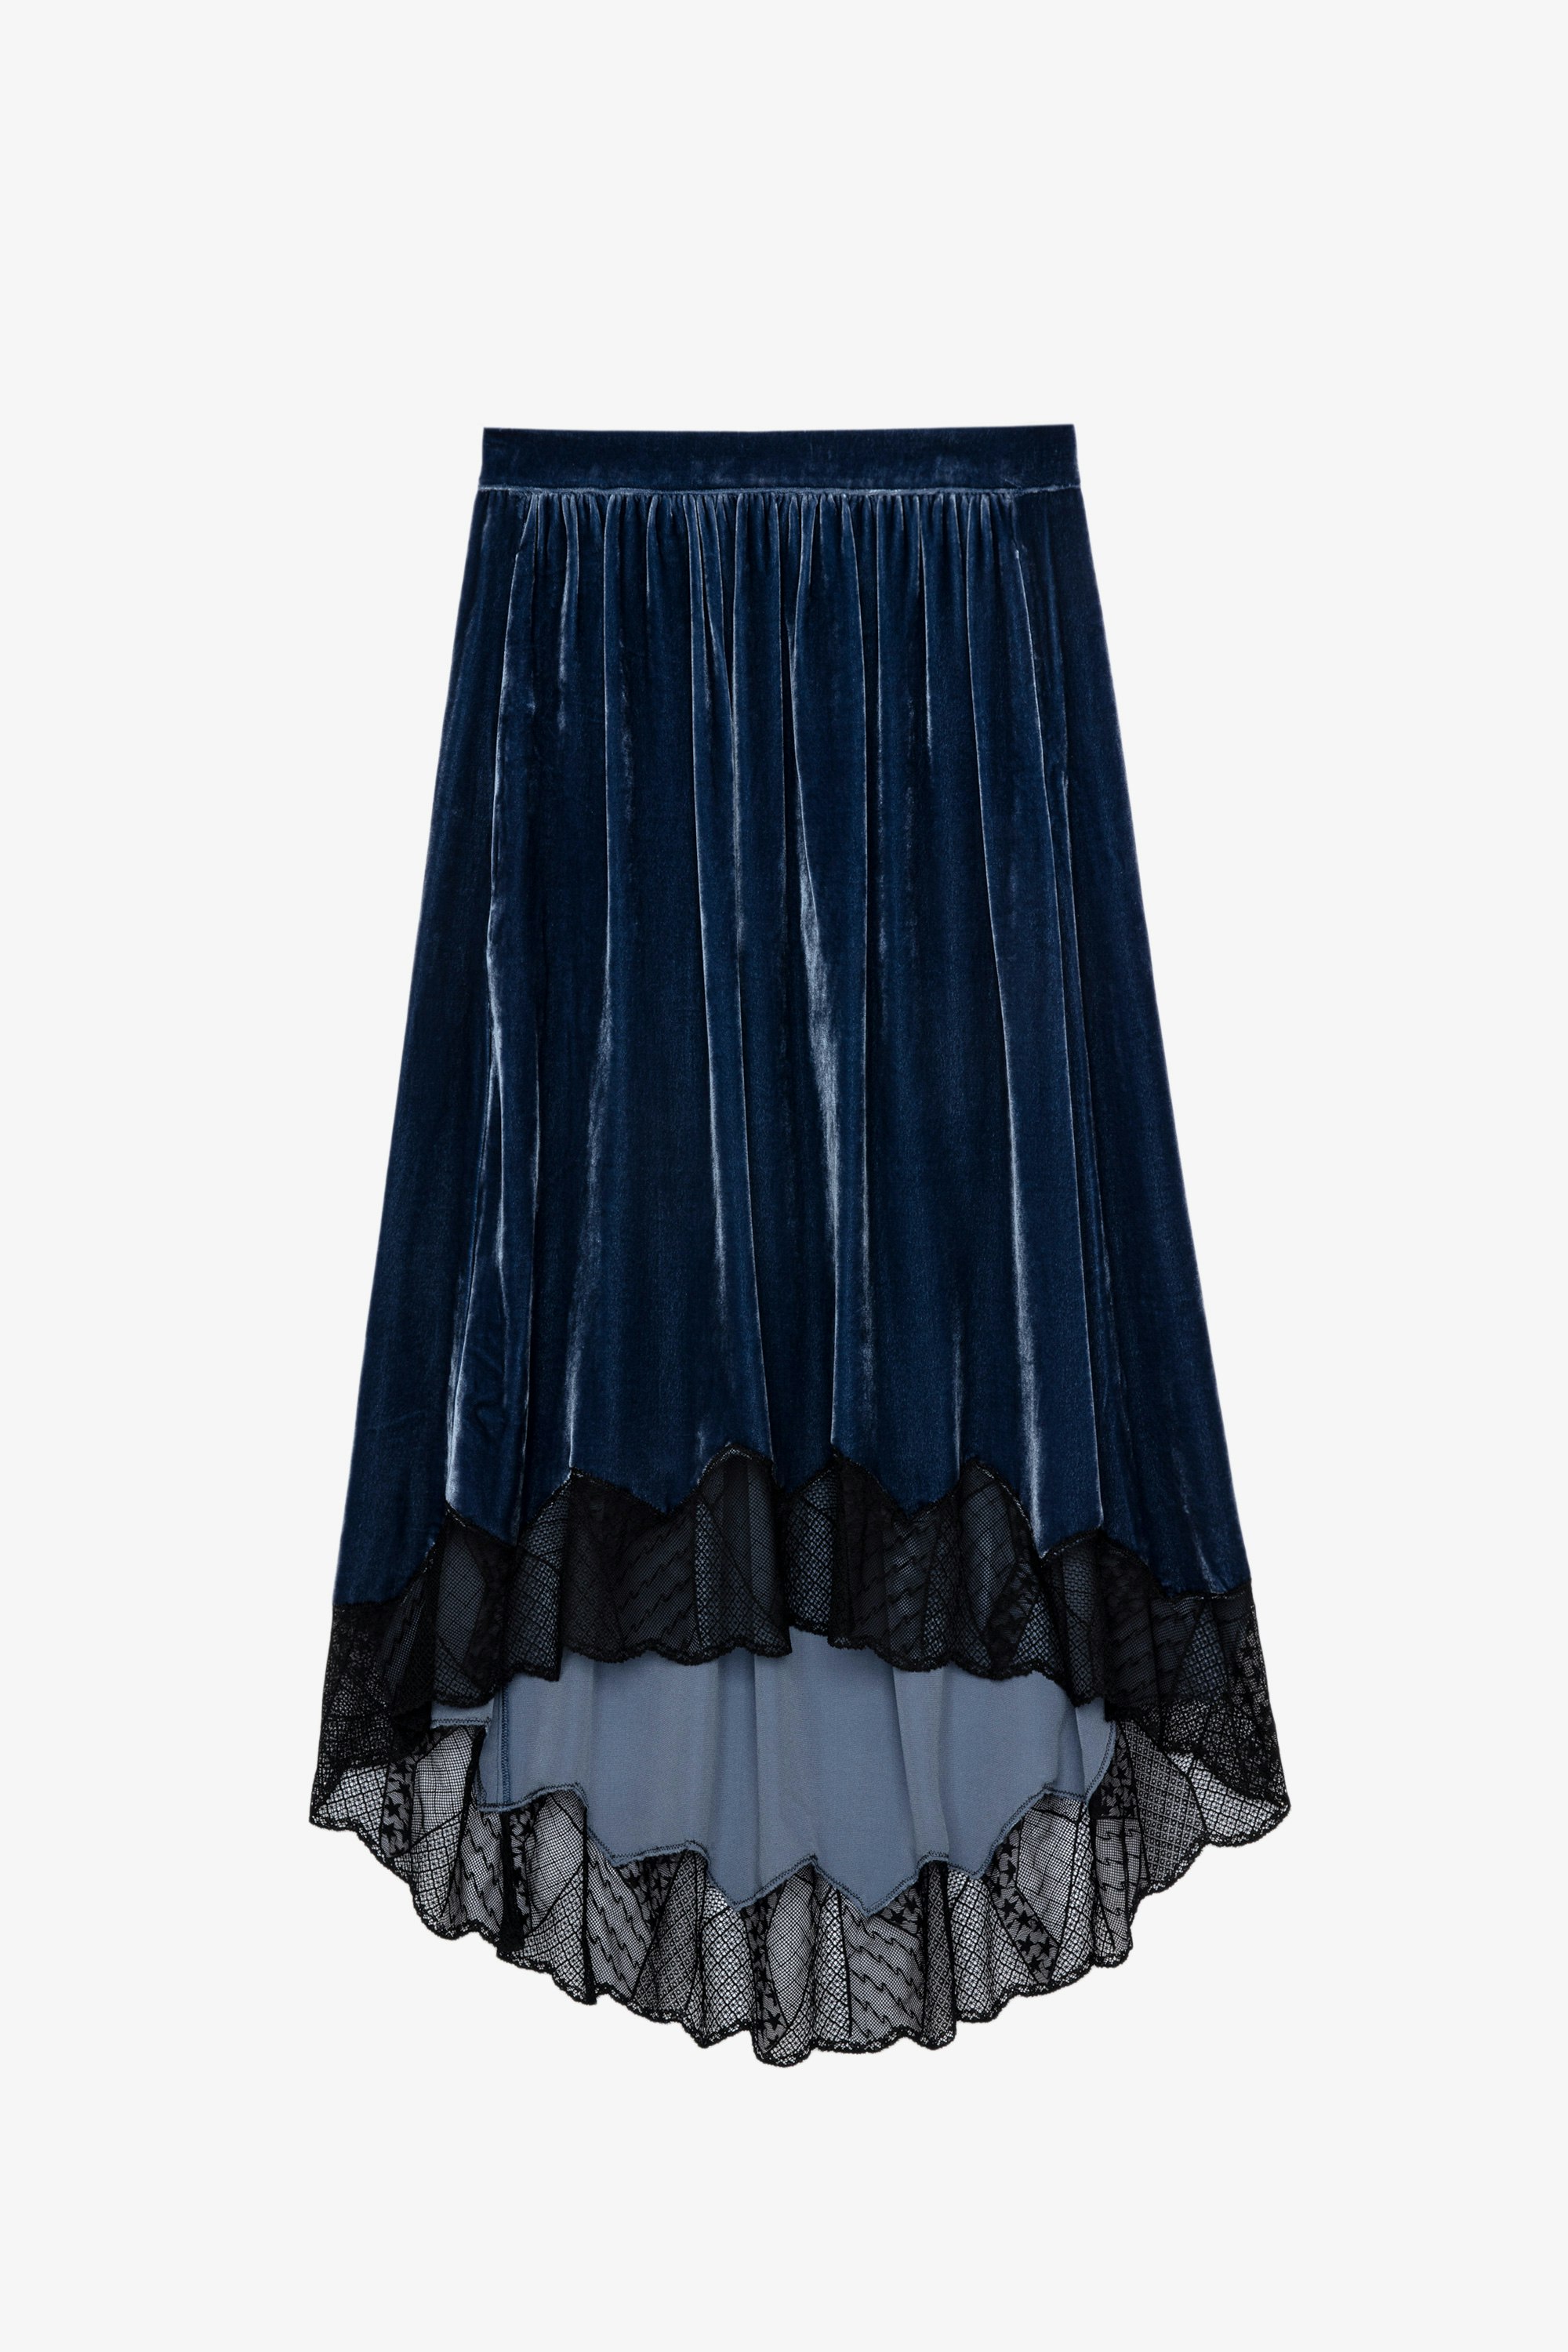 Joslin Skirt Women’s blue velvet skirt with lace trim 